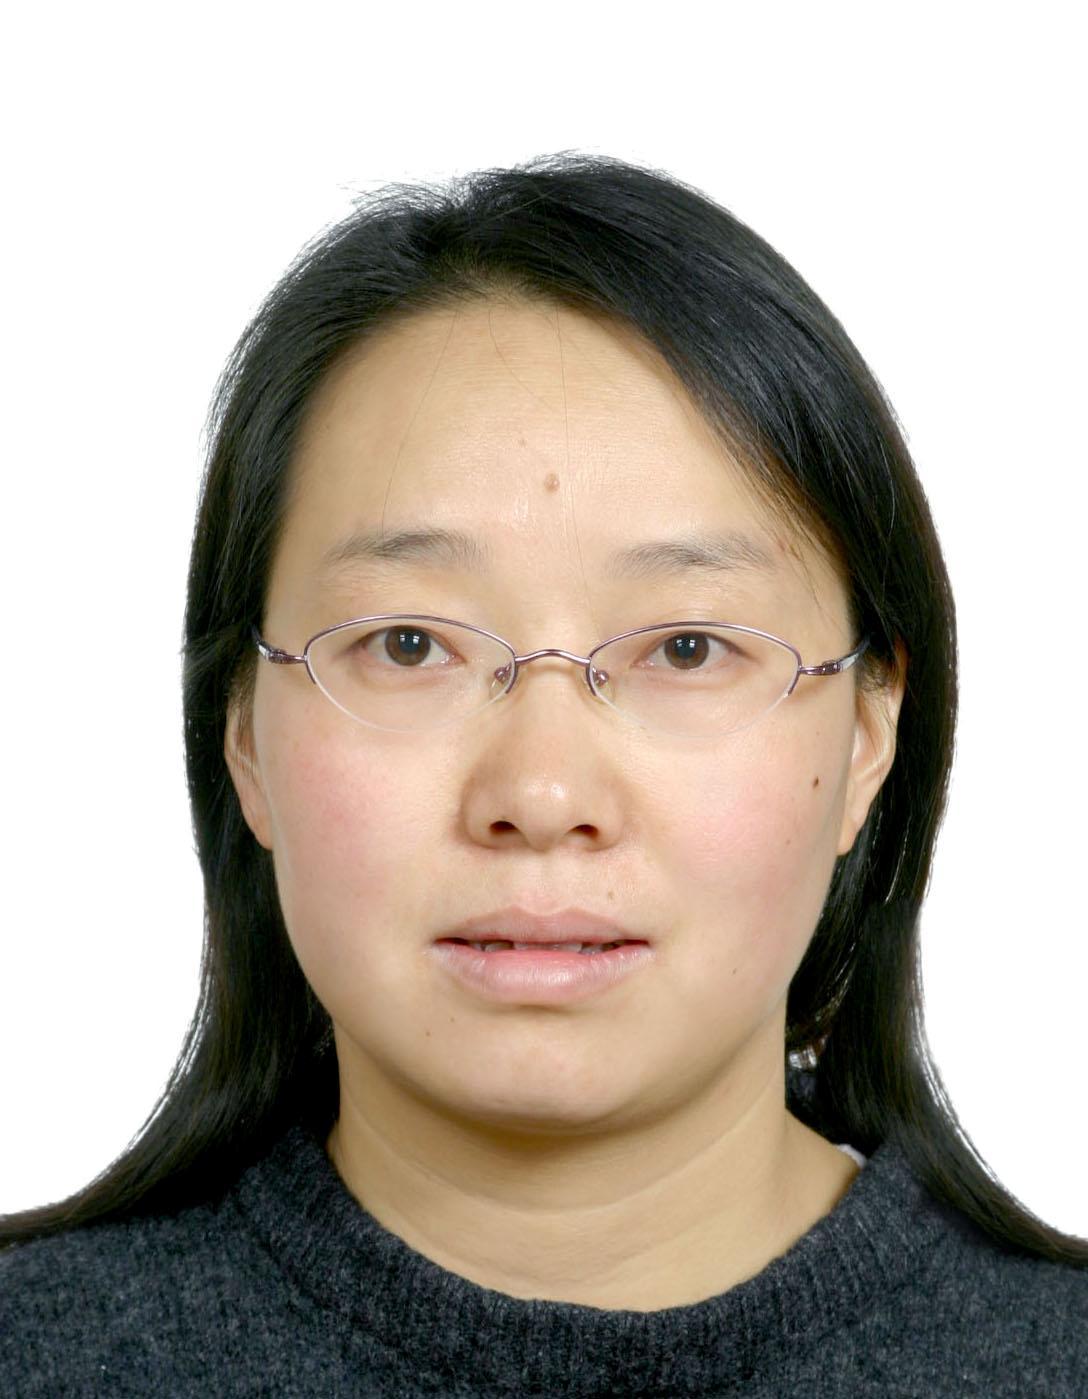 張清芳(中國人民大學心理學系教授)